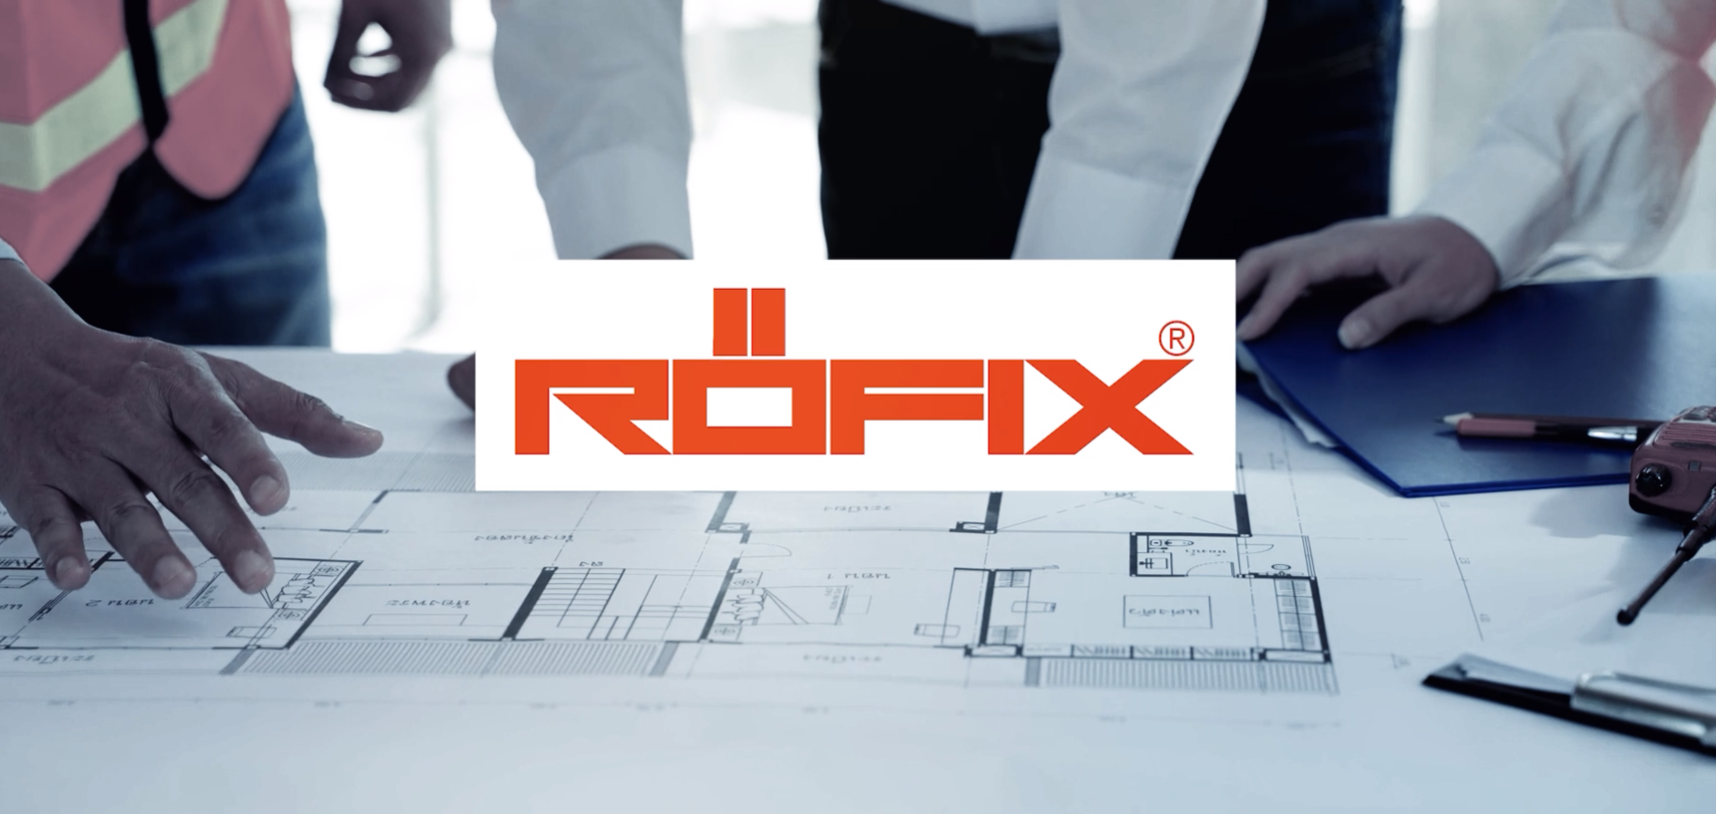 E' online il nuovo video aziendale RÖFIX Italia